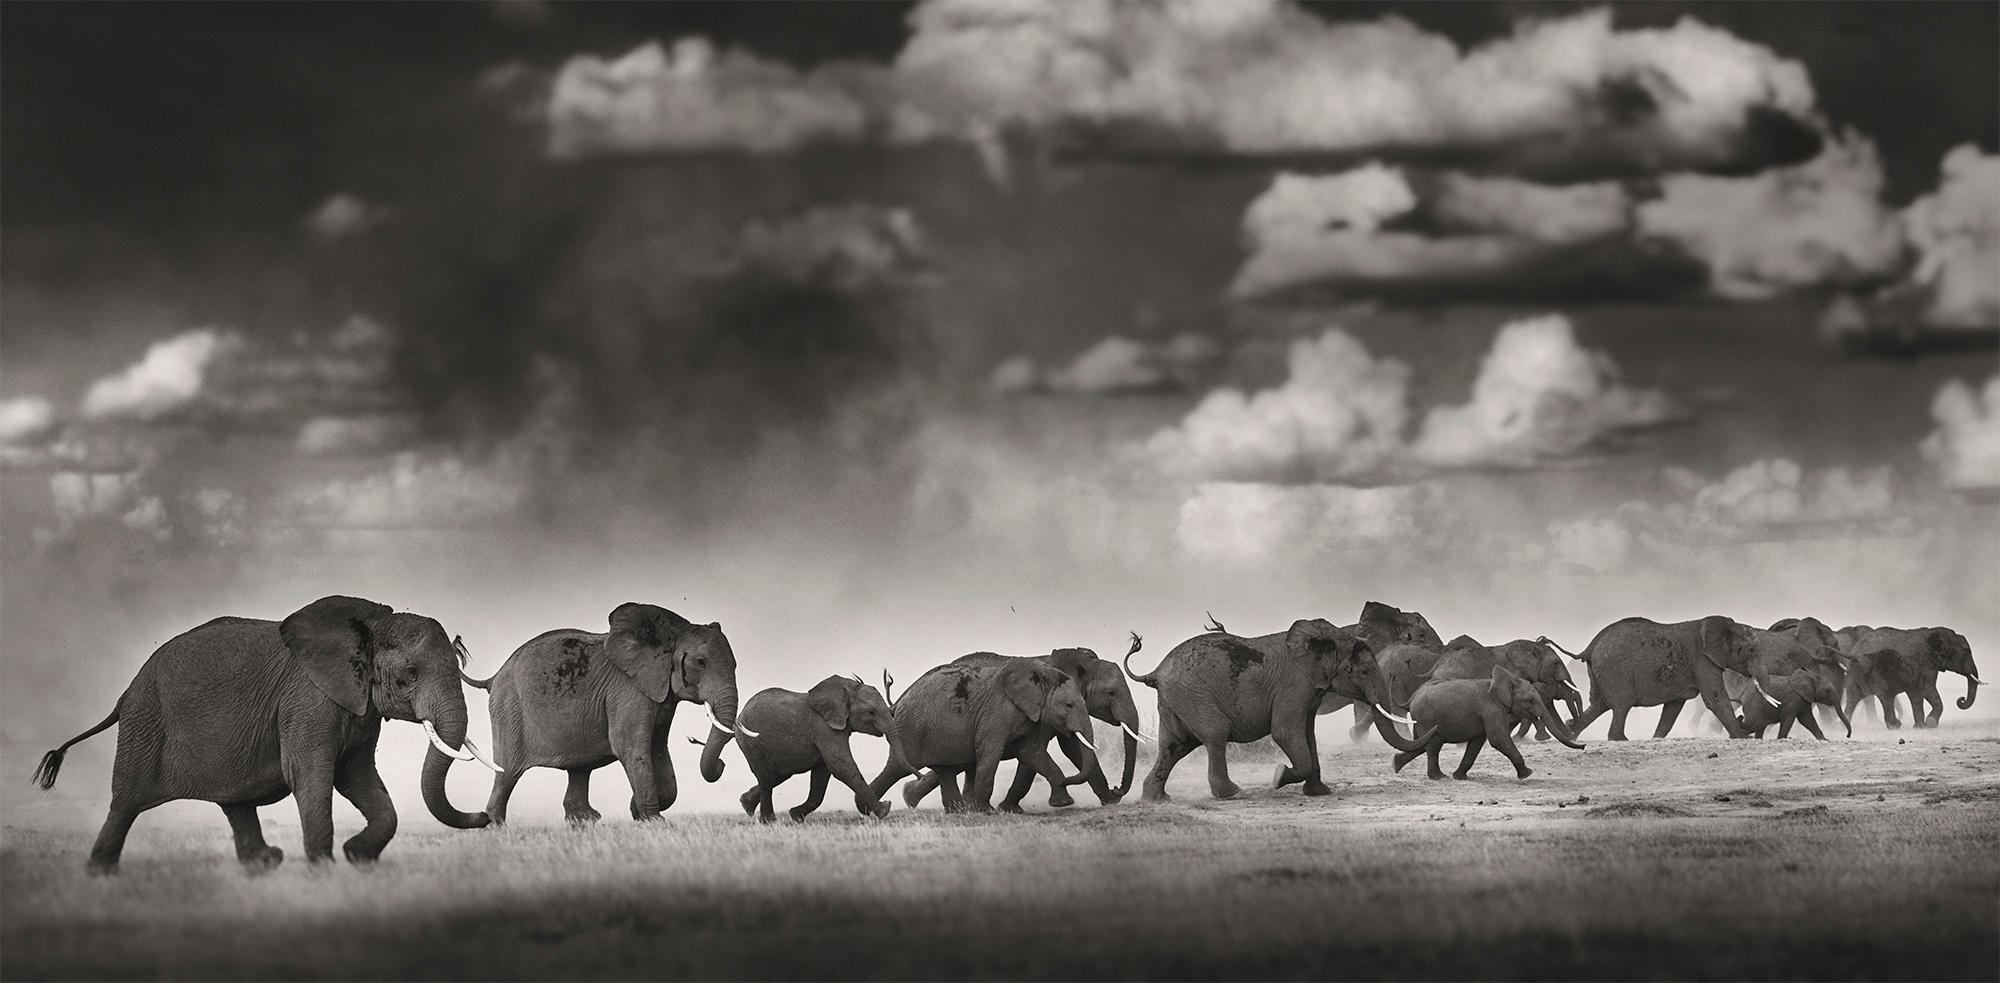 Edition de 3
Signé, titré et numéroté 
Taille totale 228 x 112 cm / 89.8 x 44.1 inch (non encadré)
Taille de chaque feuille 56 x 76 cm / 22 x 30 inch

Un troupeau d'éléphants fuit un violent orage dans le parc national d'Amboseli.

En 2012, Joachim